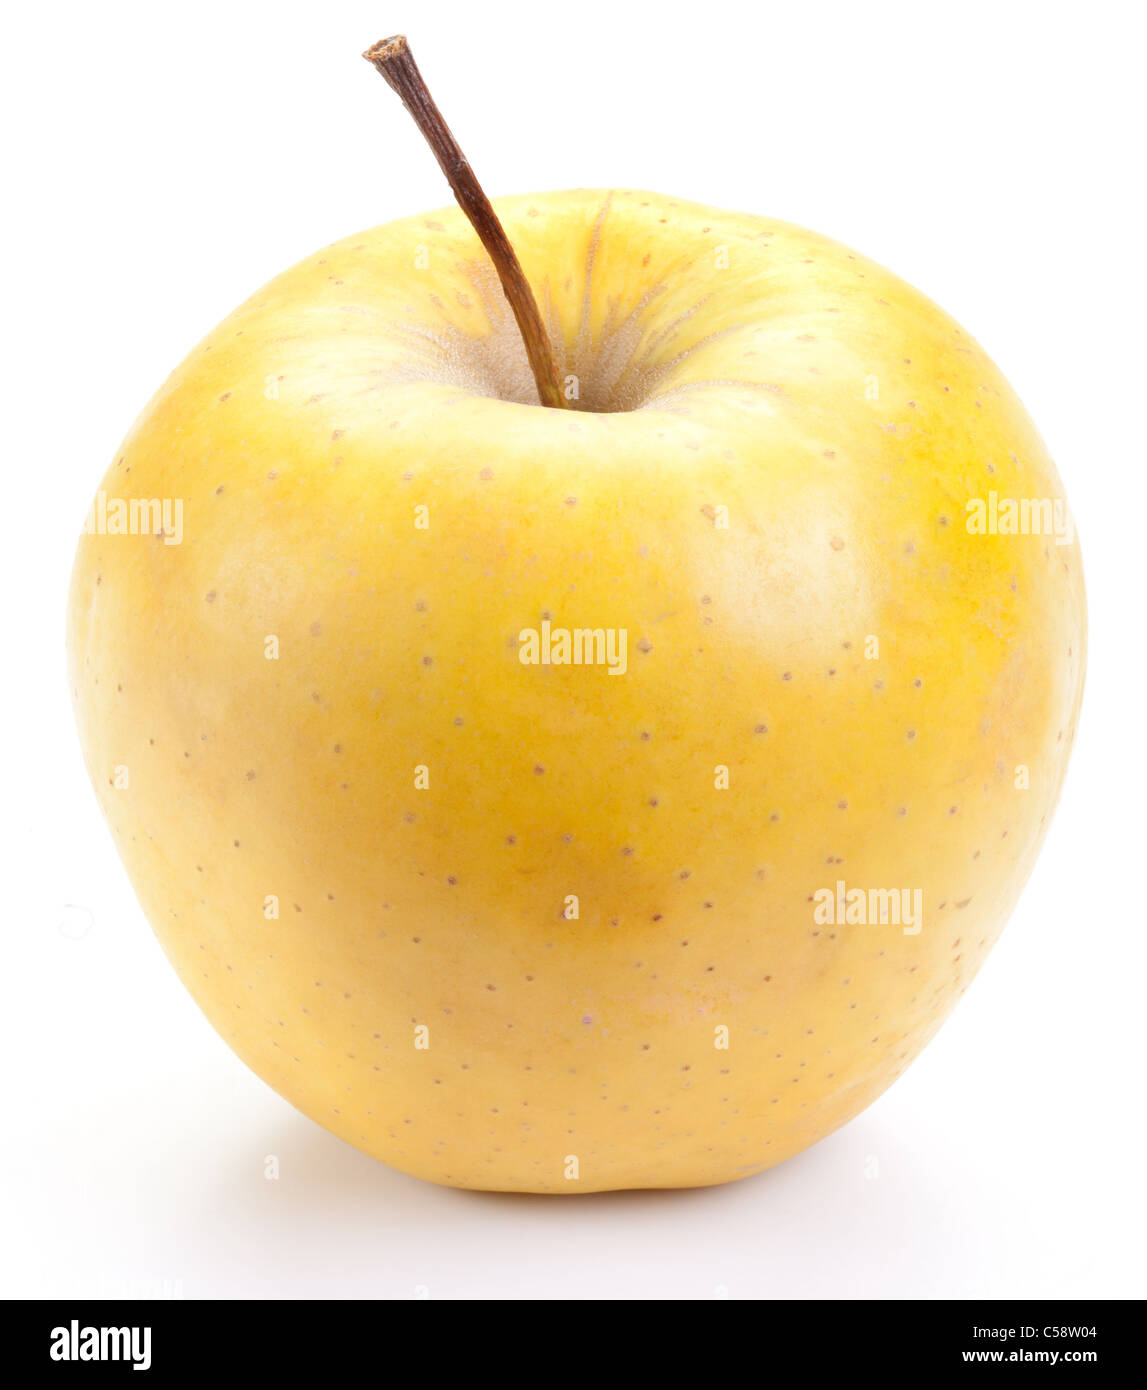 Saftig, gelber Apfel, isoliert auf einem weißen Hintergrund. Stockfoto